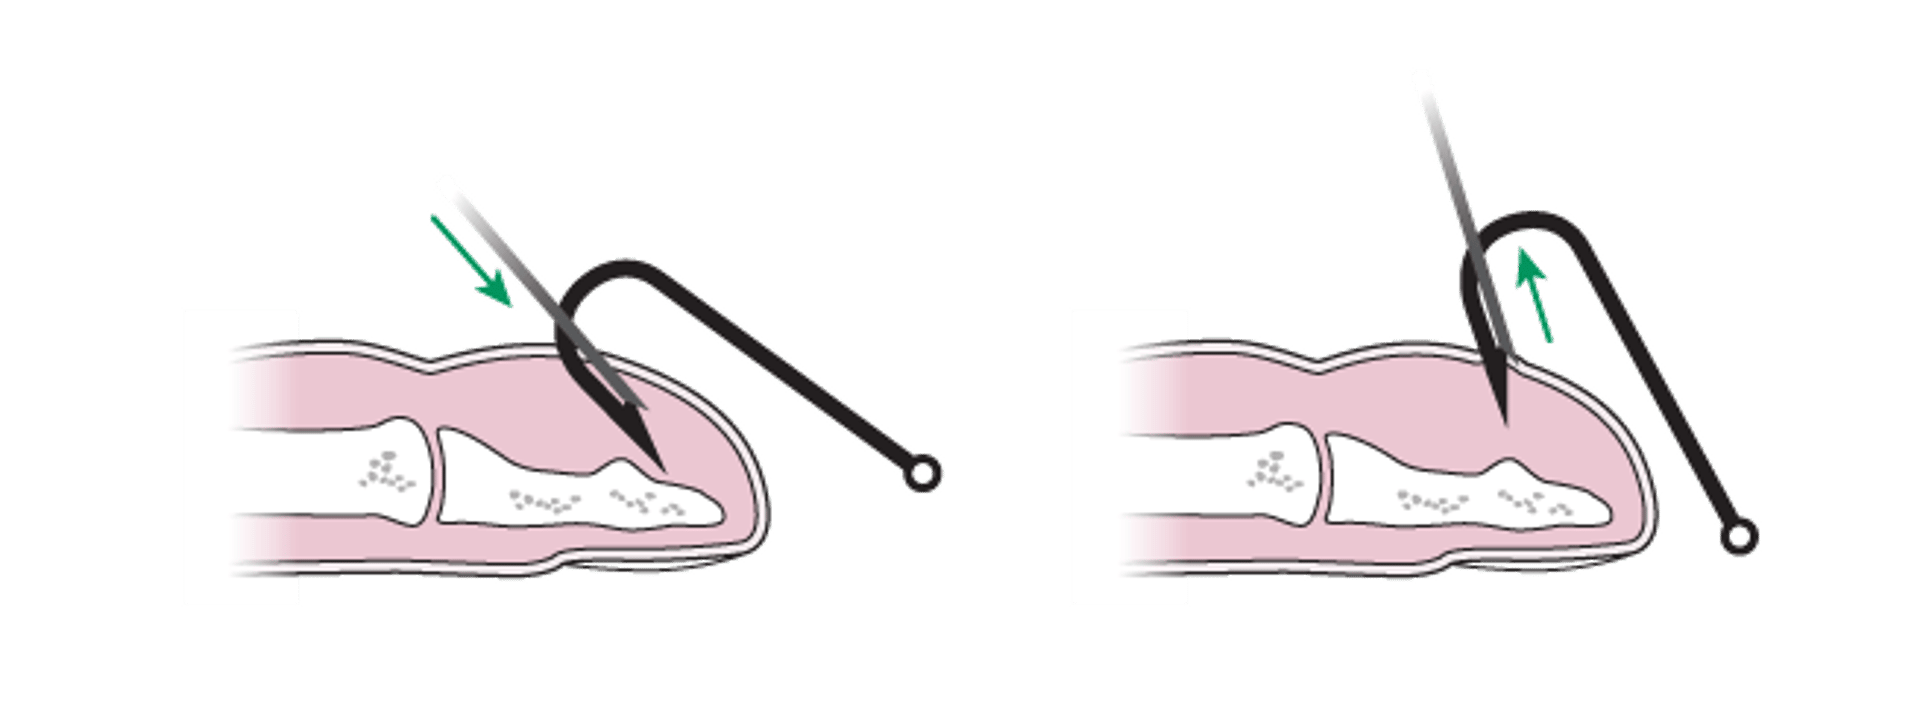 Удаление рыболовного крючка: метод игольного колпака (закрытие режущего края рыболовного крючка)